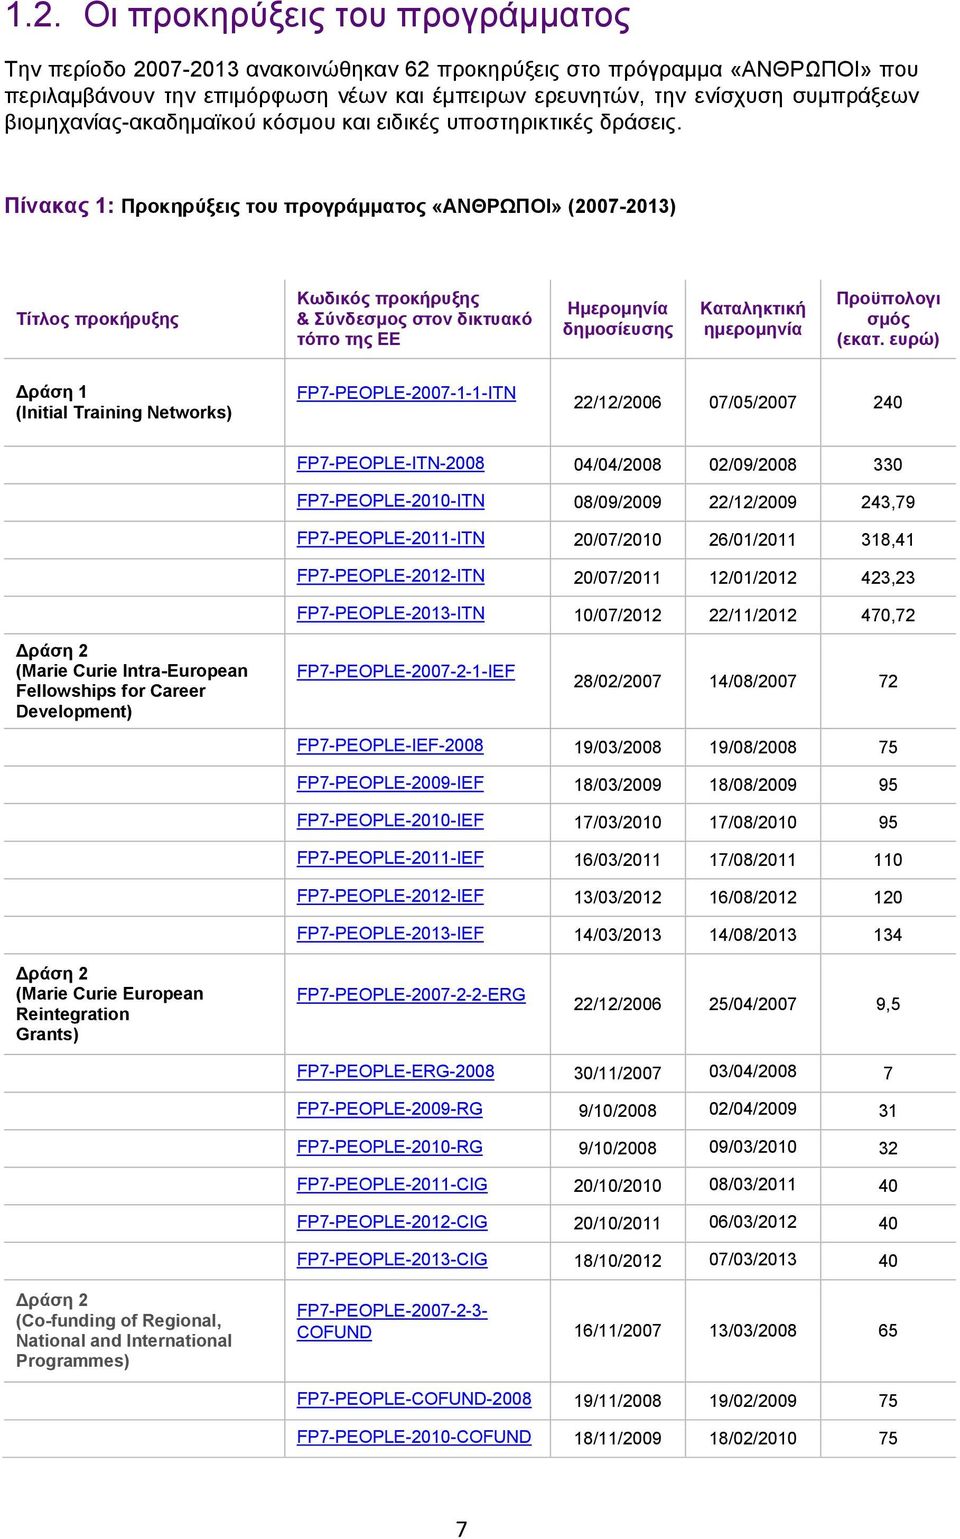 Πίνακας : Προκηρύξεις του προγράμματος «ΑΝΘΡΩΠΟΙ» (2007-203) Τίτλος προκήρυξης Κωδικός προκήρυξης & Σύνδεσμος στον δικτυακό τόπο της ΕΕ Ημερομηνία δημοσίευσης Καταληκτική ημερομηνία Προϋπολογι σμός